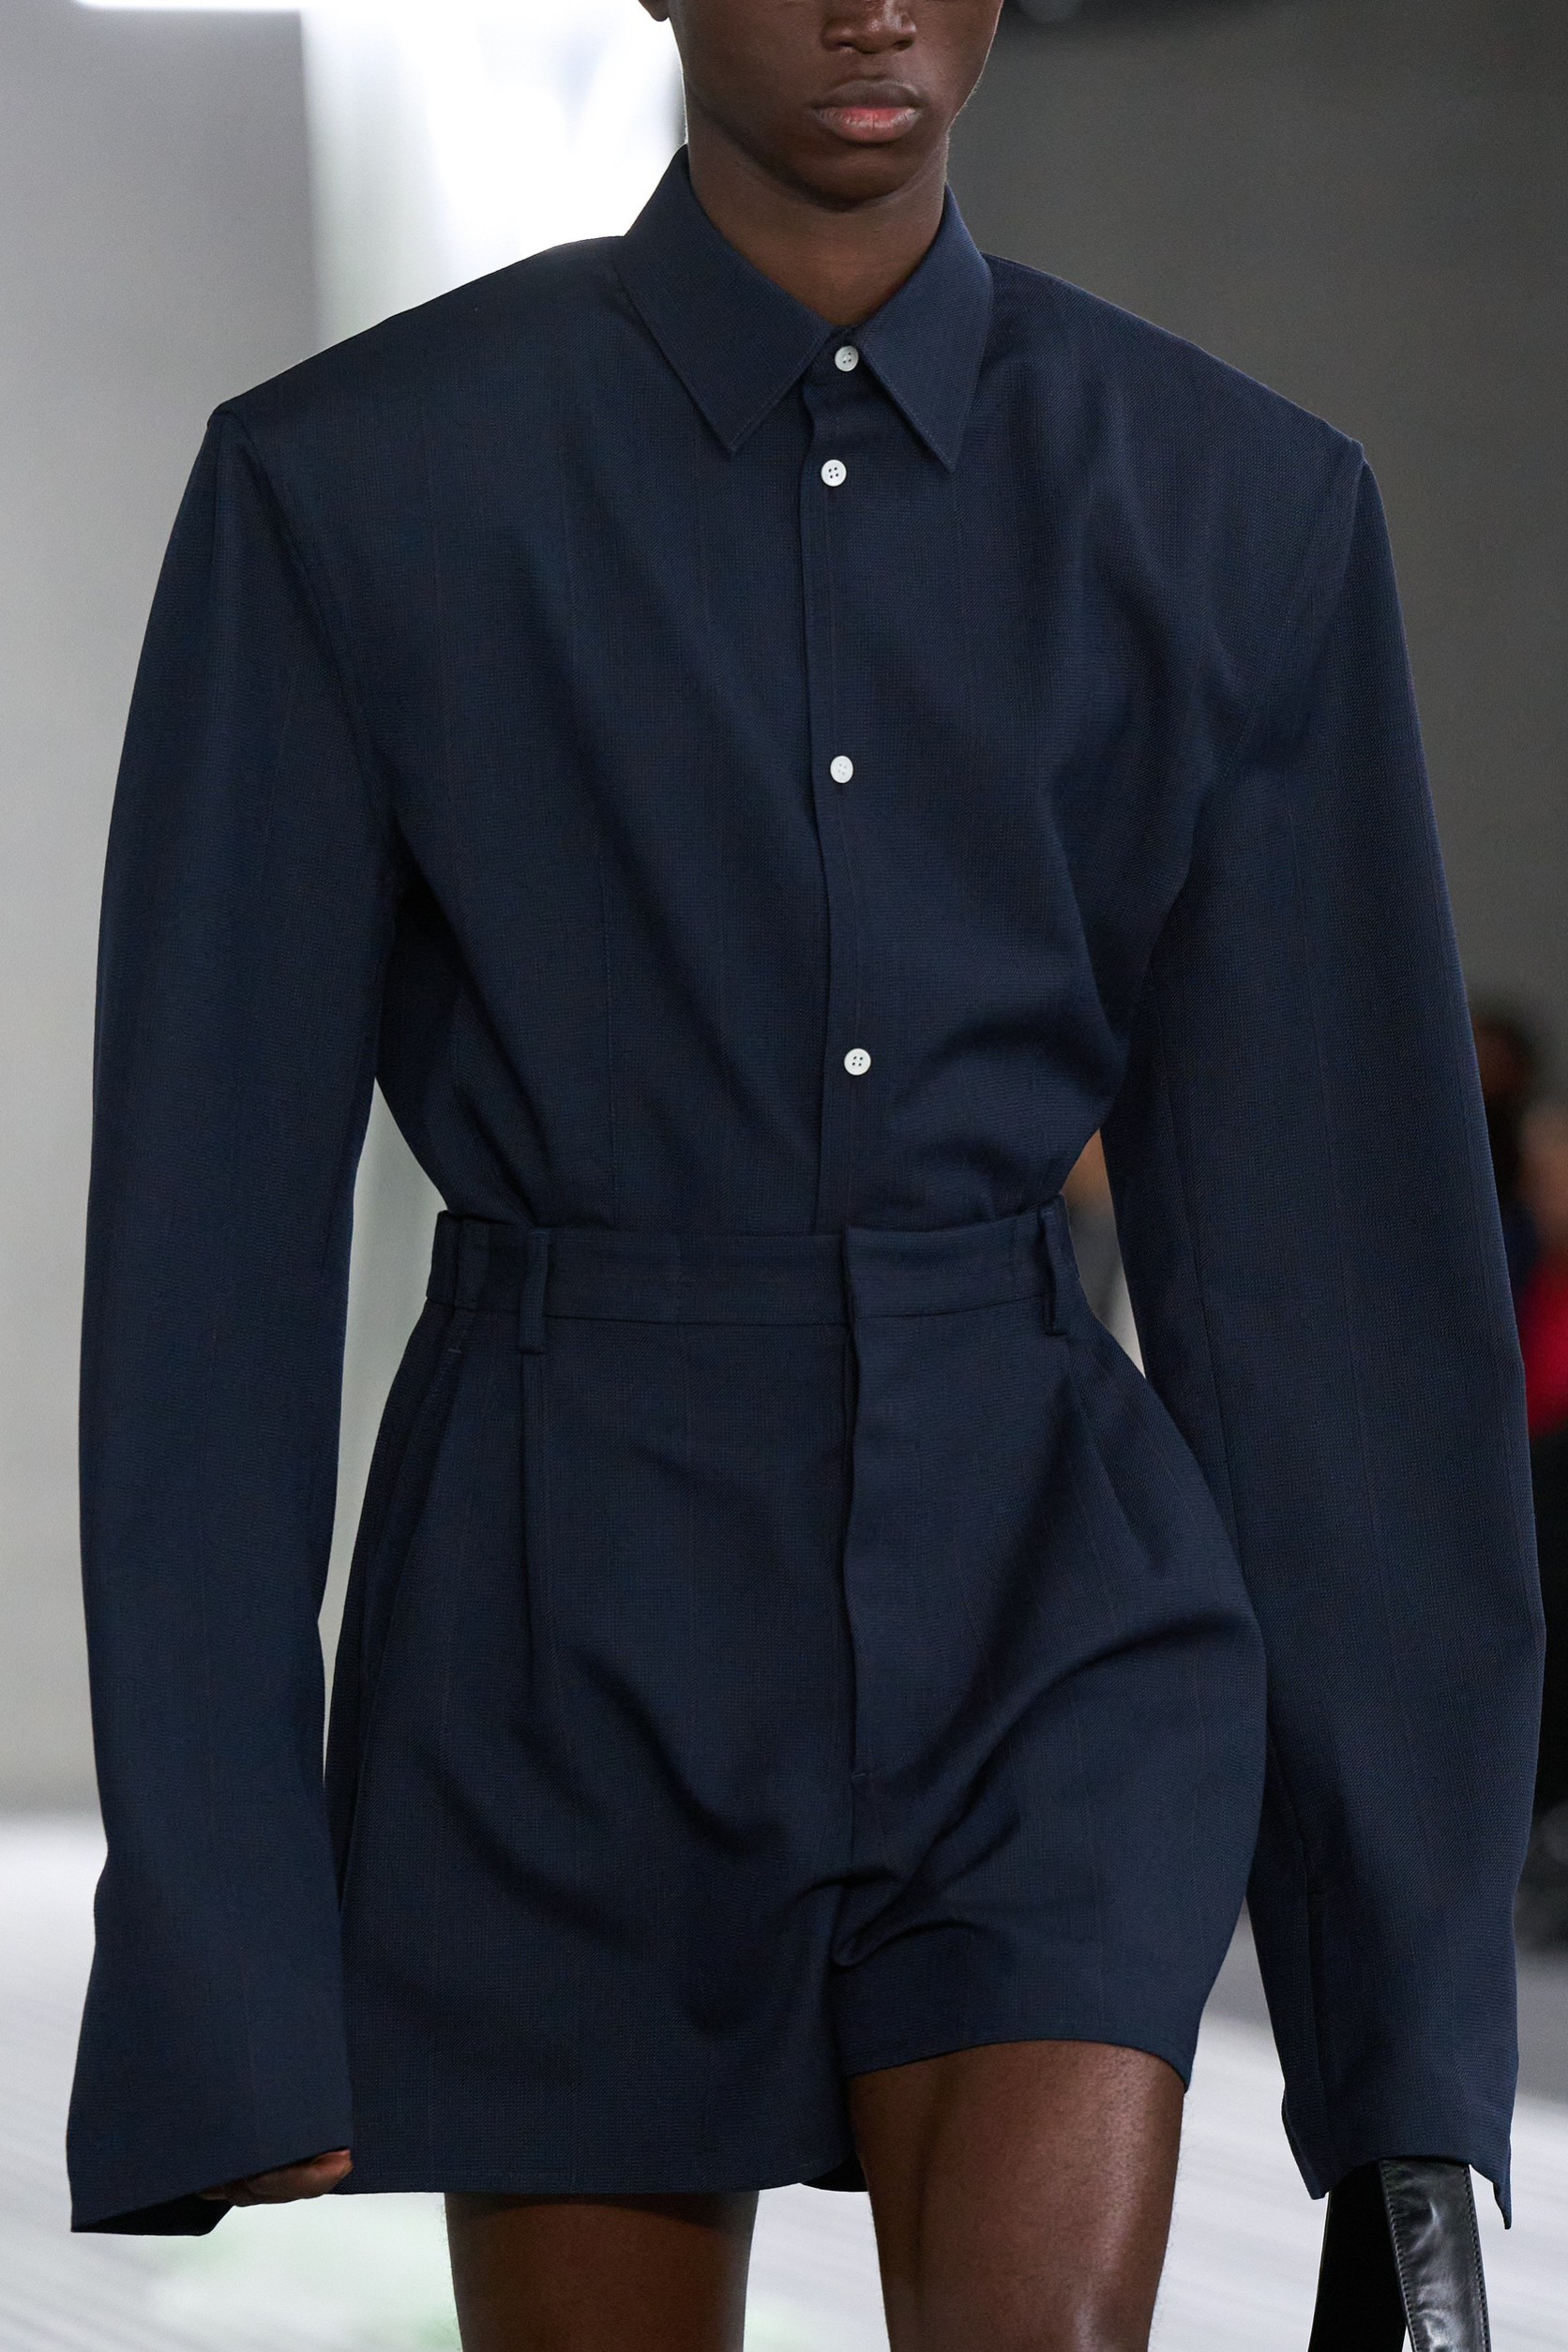 Tucked-in Jacket! พลิกมิติการสวมแจ็กเก็ตในกางเกงจาก Prada ที่สร้างสีสัน ...